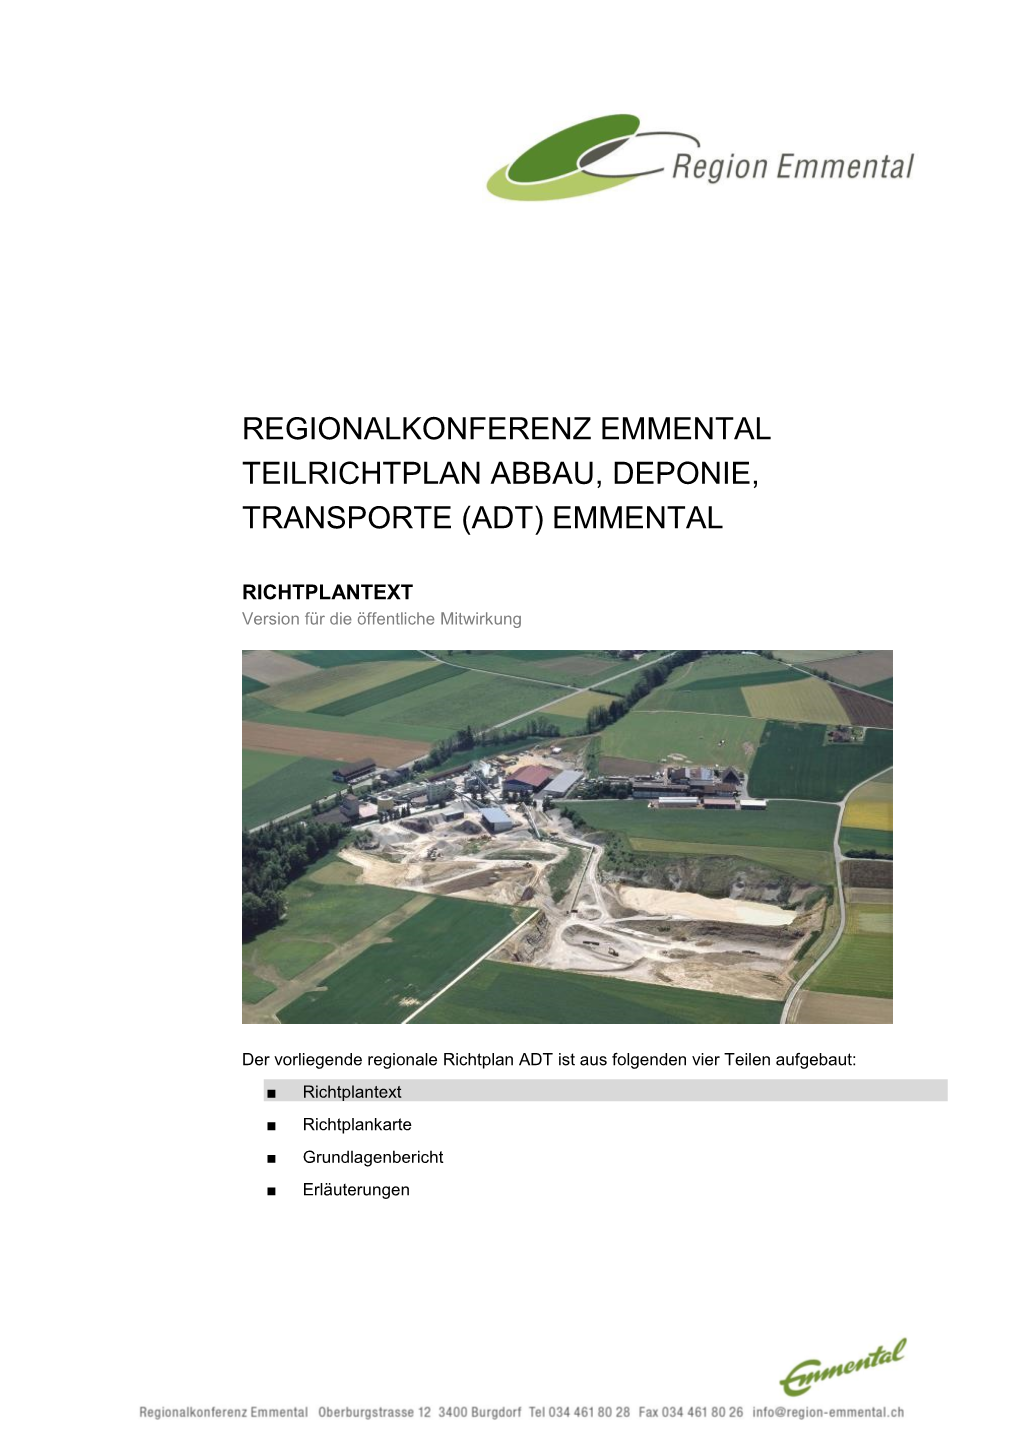 Regionalkonferenz Emmental Teilrichtplan Abbau, Deponie, Transporte (Adt) Emmental